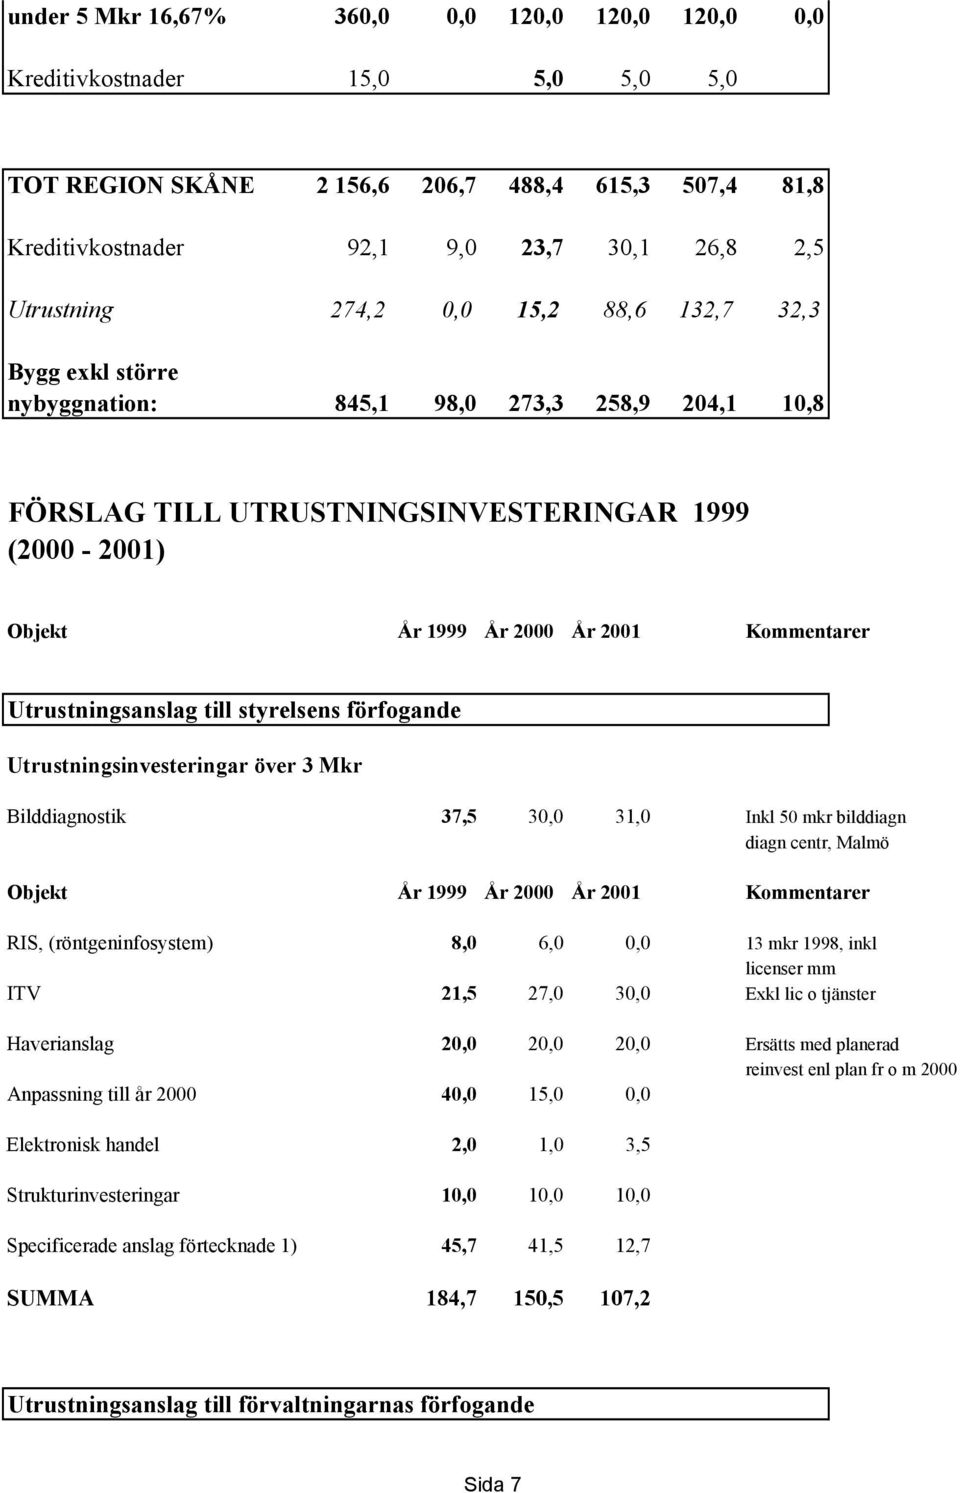 Utrustningsanslag till styrelsens förfogande Utrustningsinvesteringar över 3 Mkr Bilddiagnostik 37,5 30,0 31,0 Inkl 50 mkr bilddiagn diagn centr, Malmö Objekt År 1999 År 2000 År 2001 Kommentarer RIS,